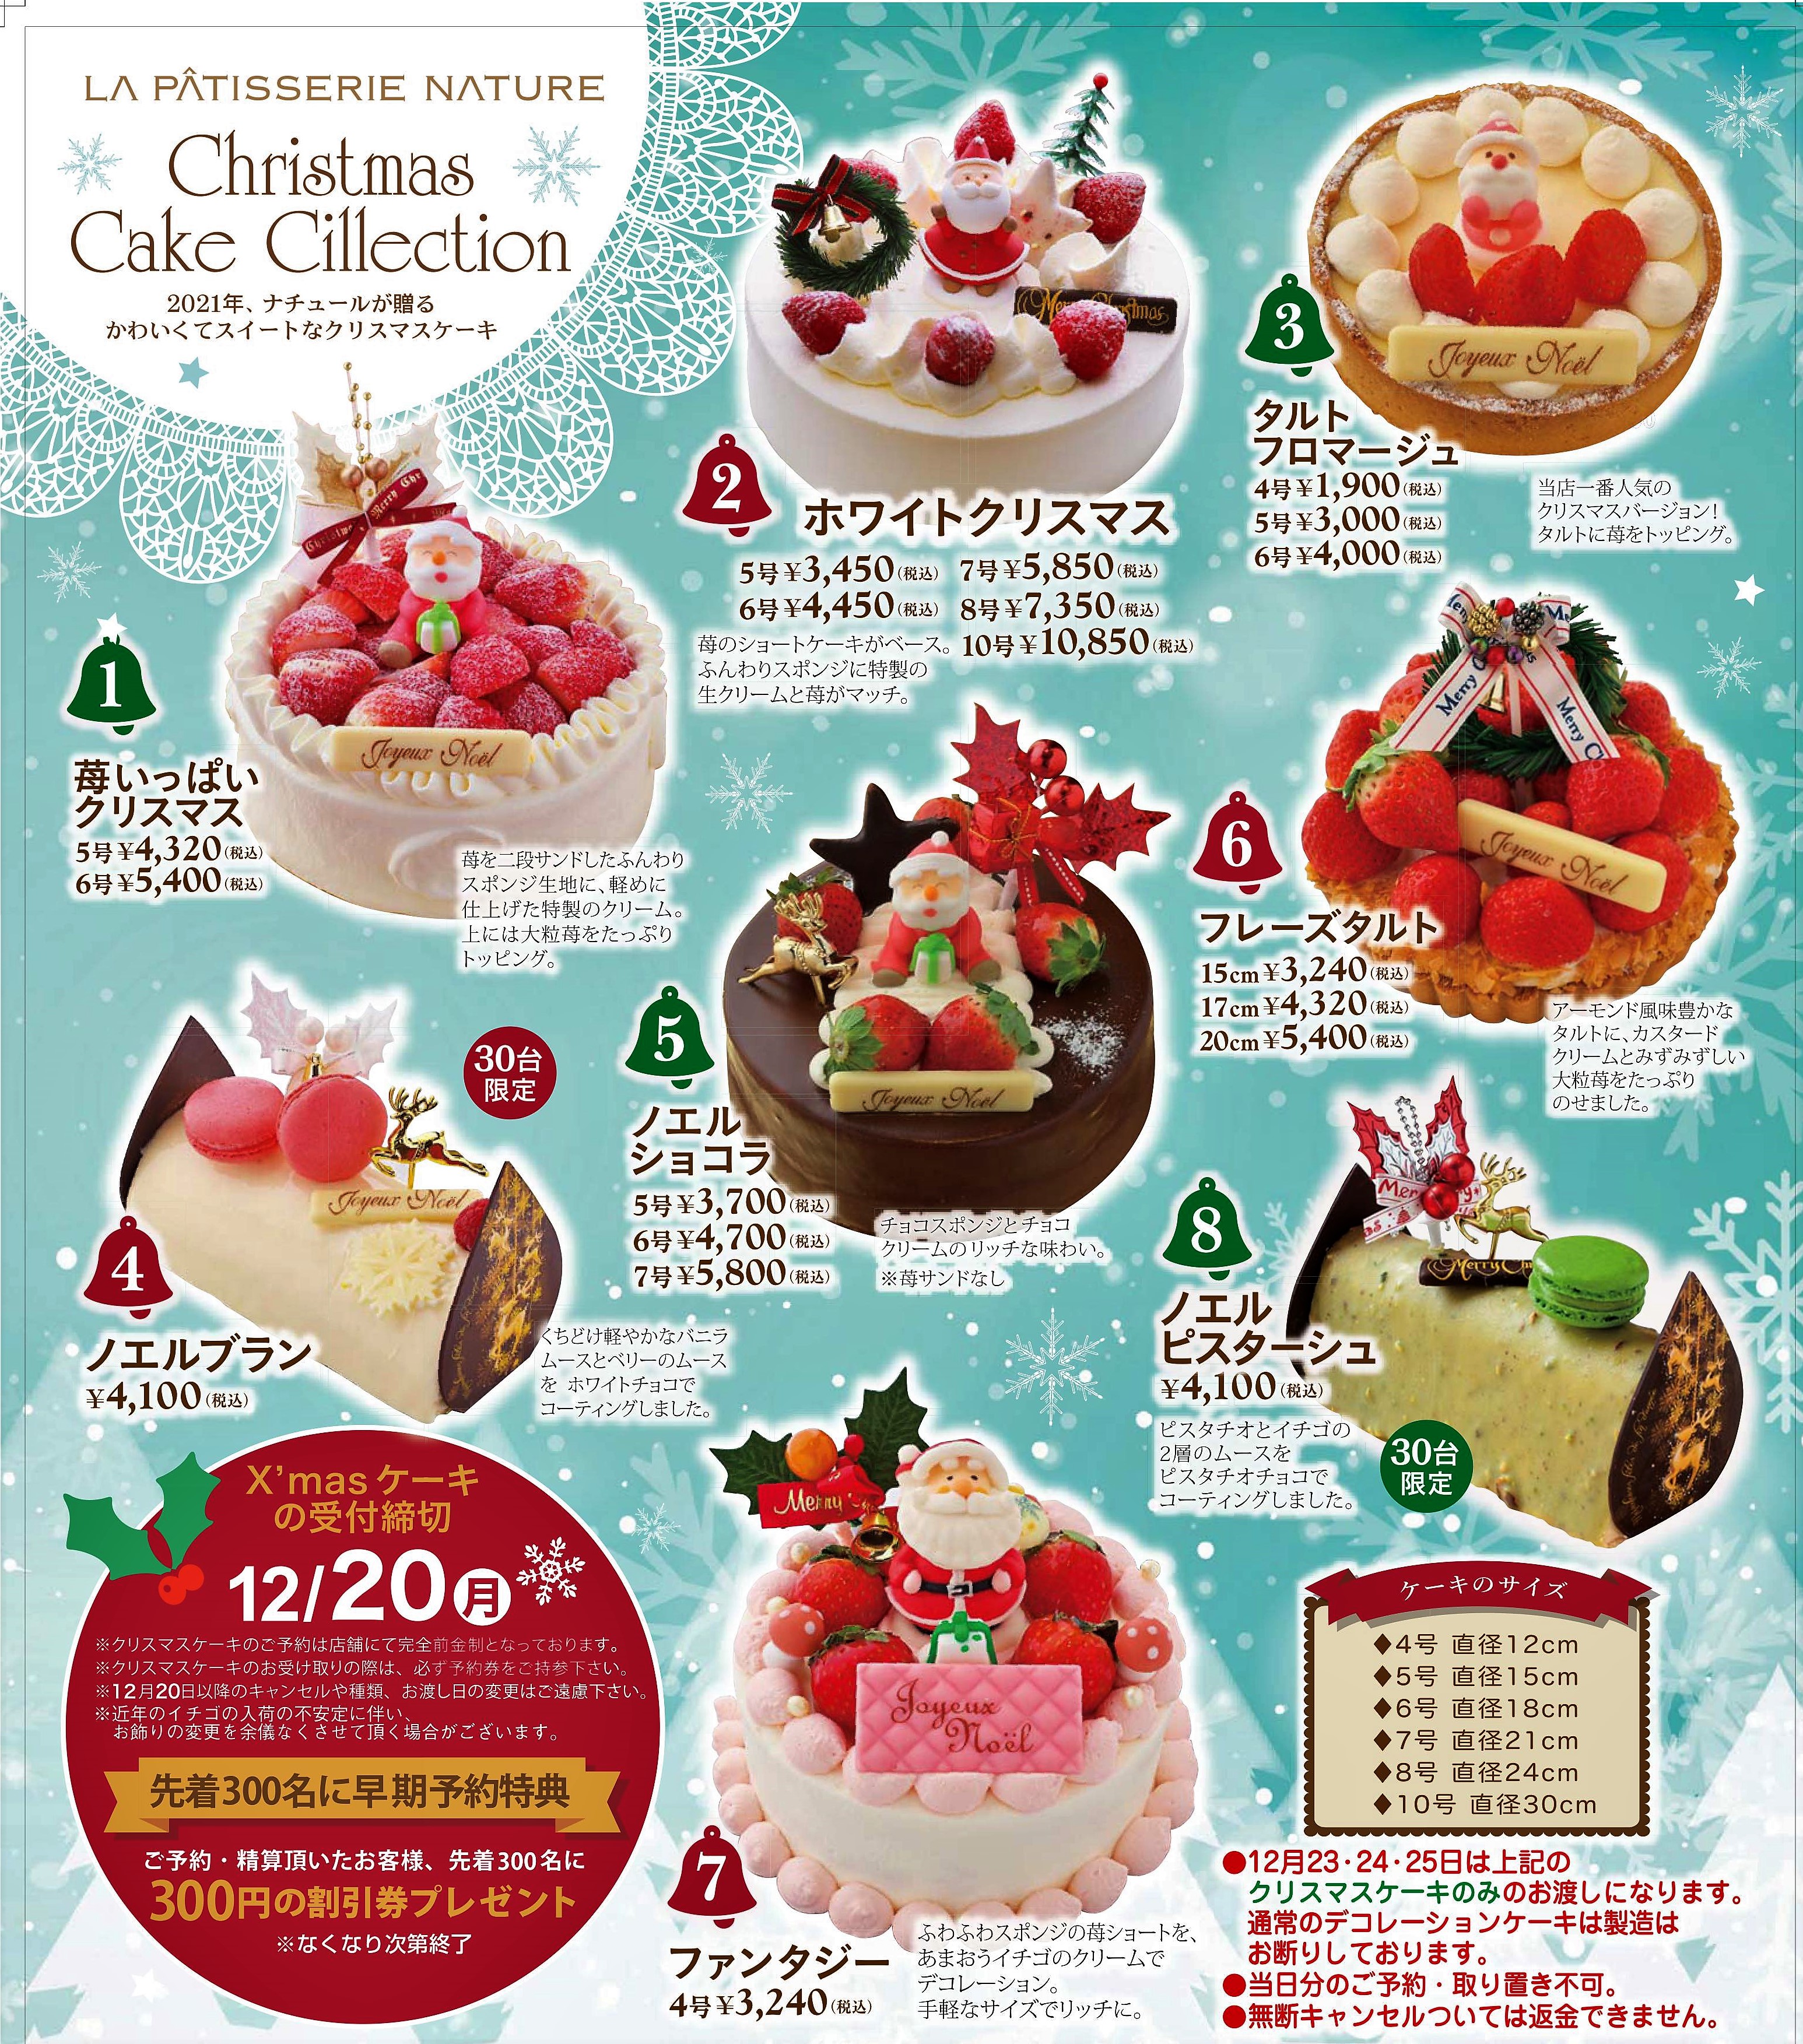 クリスマスケーキの御予約 承ります 滋賀県のこだわり濃厚チーズケーキ ナチュール